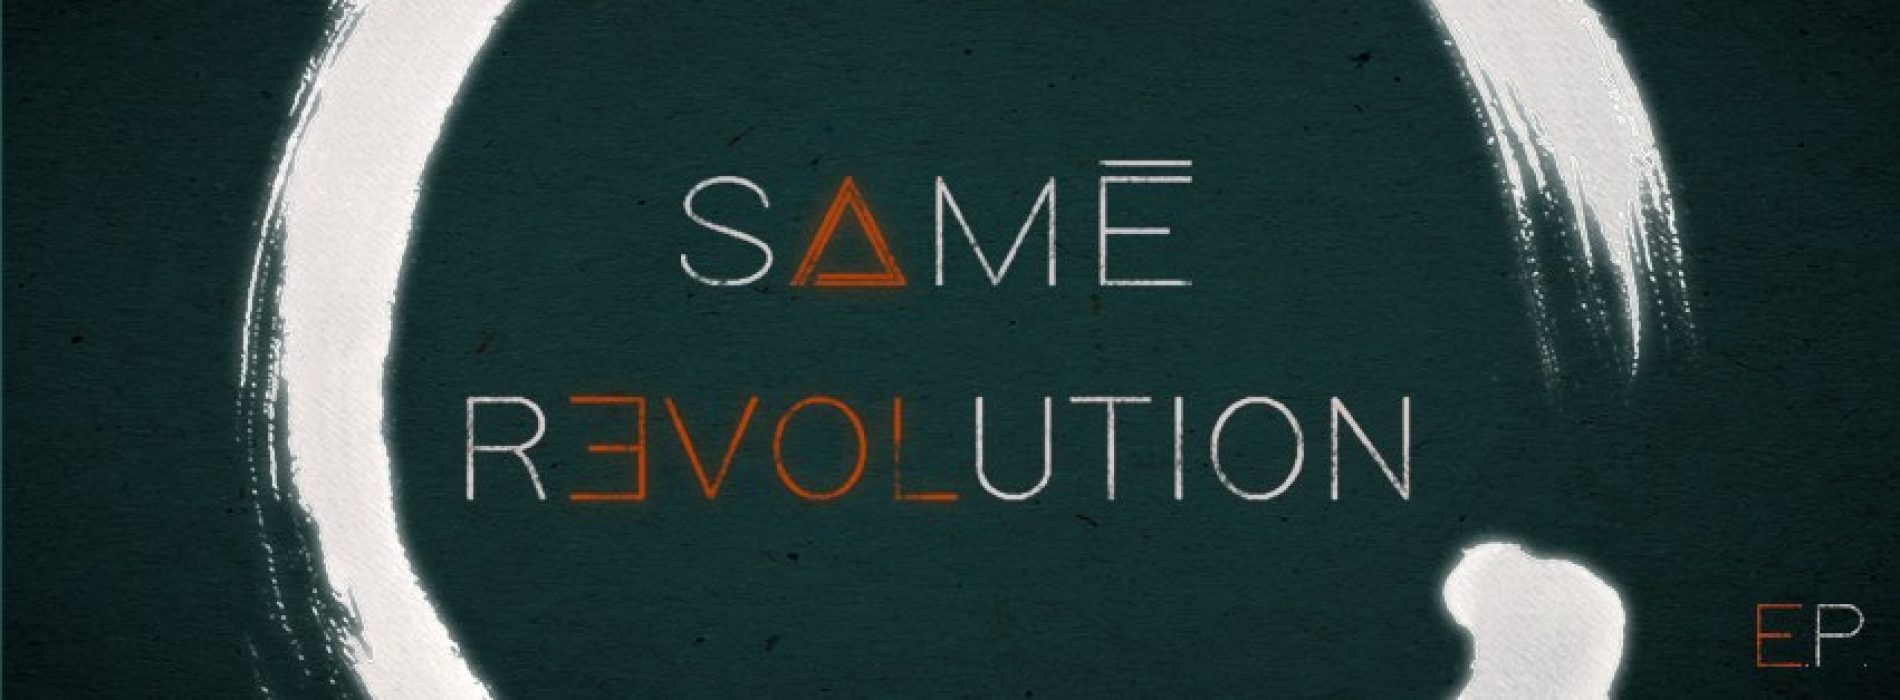 CLK DECOUVERTE – Samé mène sa « REVOLUTION » à travers la musique.